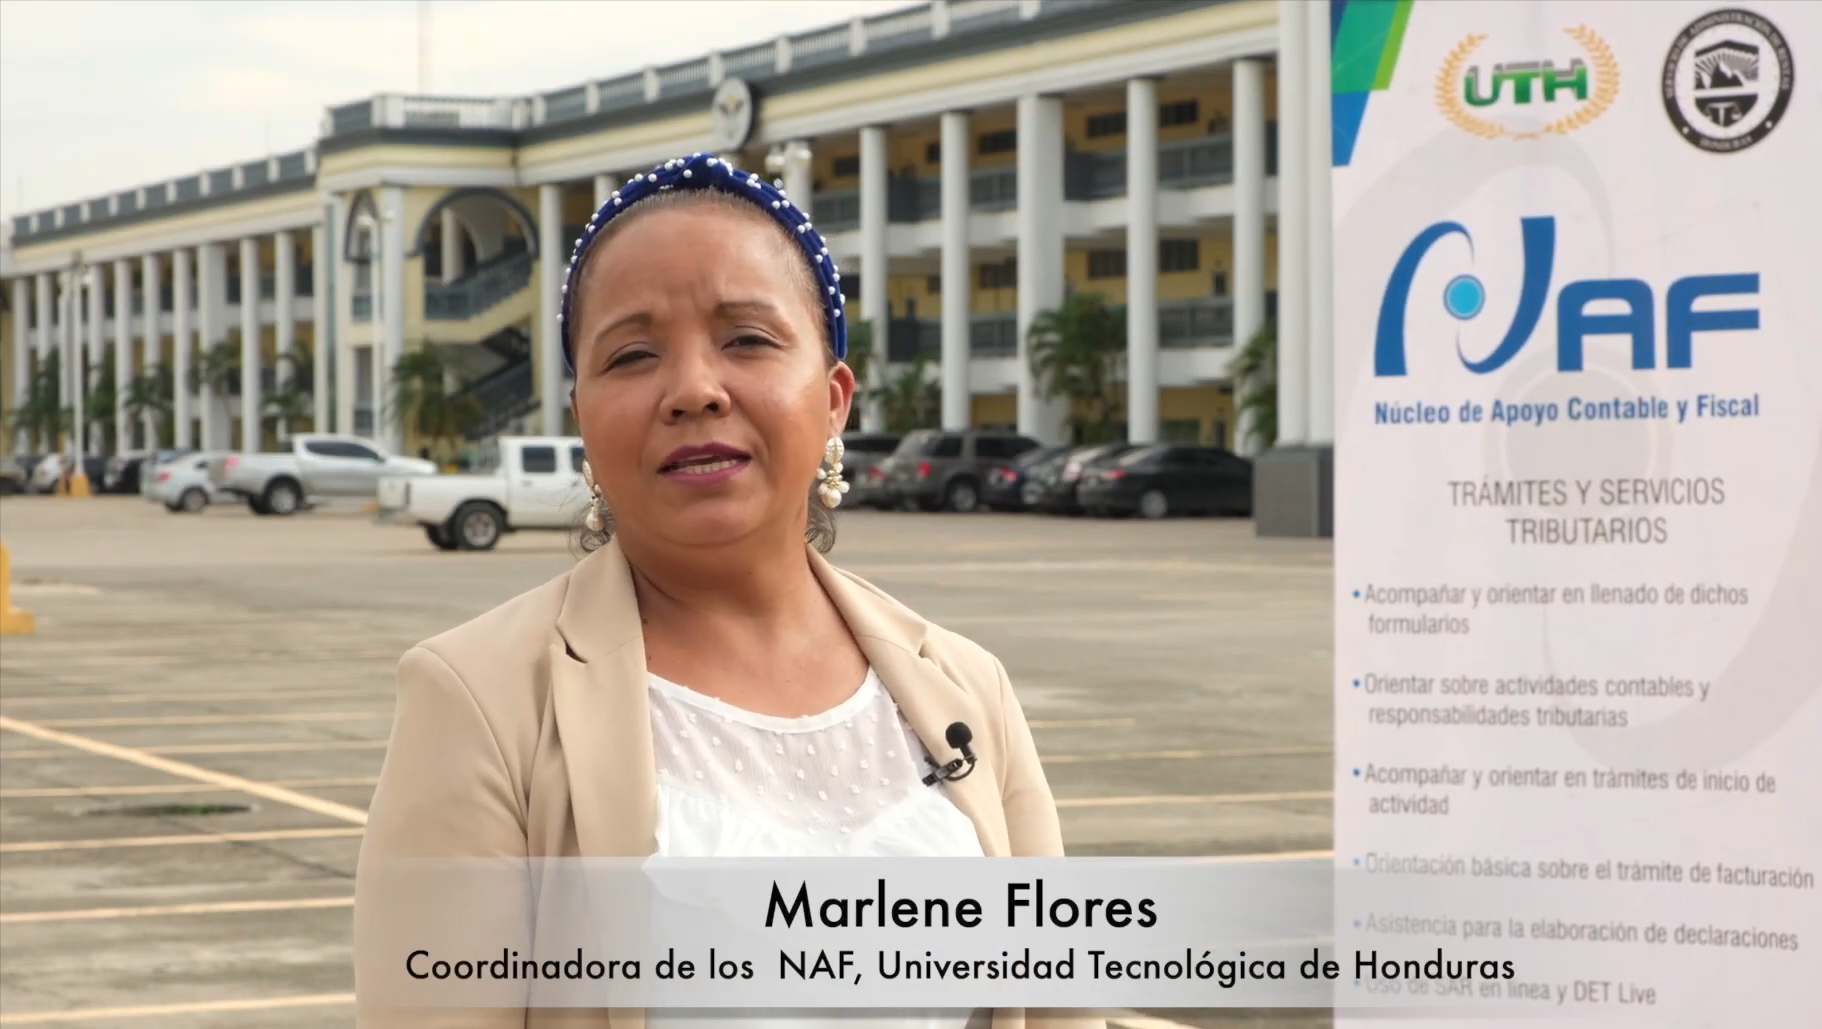 Tercer puesto del concurso “Los NAF como palanca de inclusión social en tiempos de Covid”: UTH de Honduras